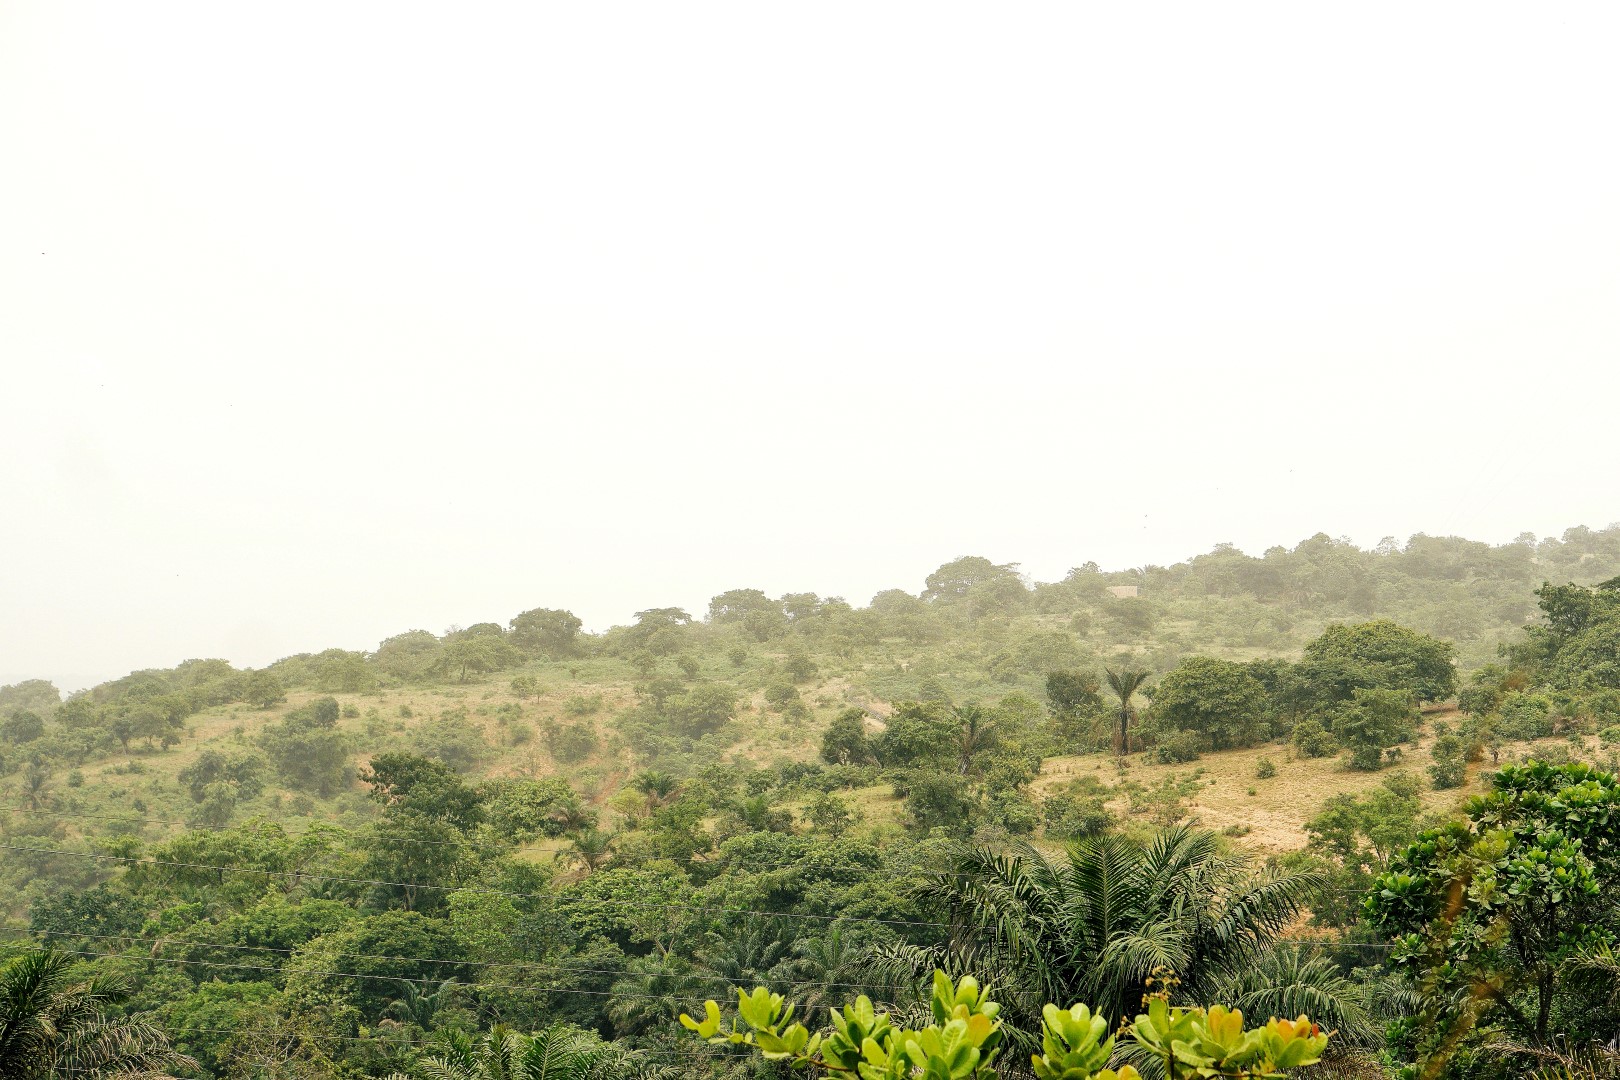 Ngwo forest in Enugu